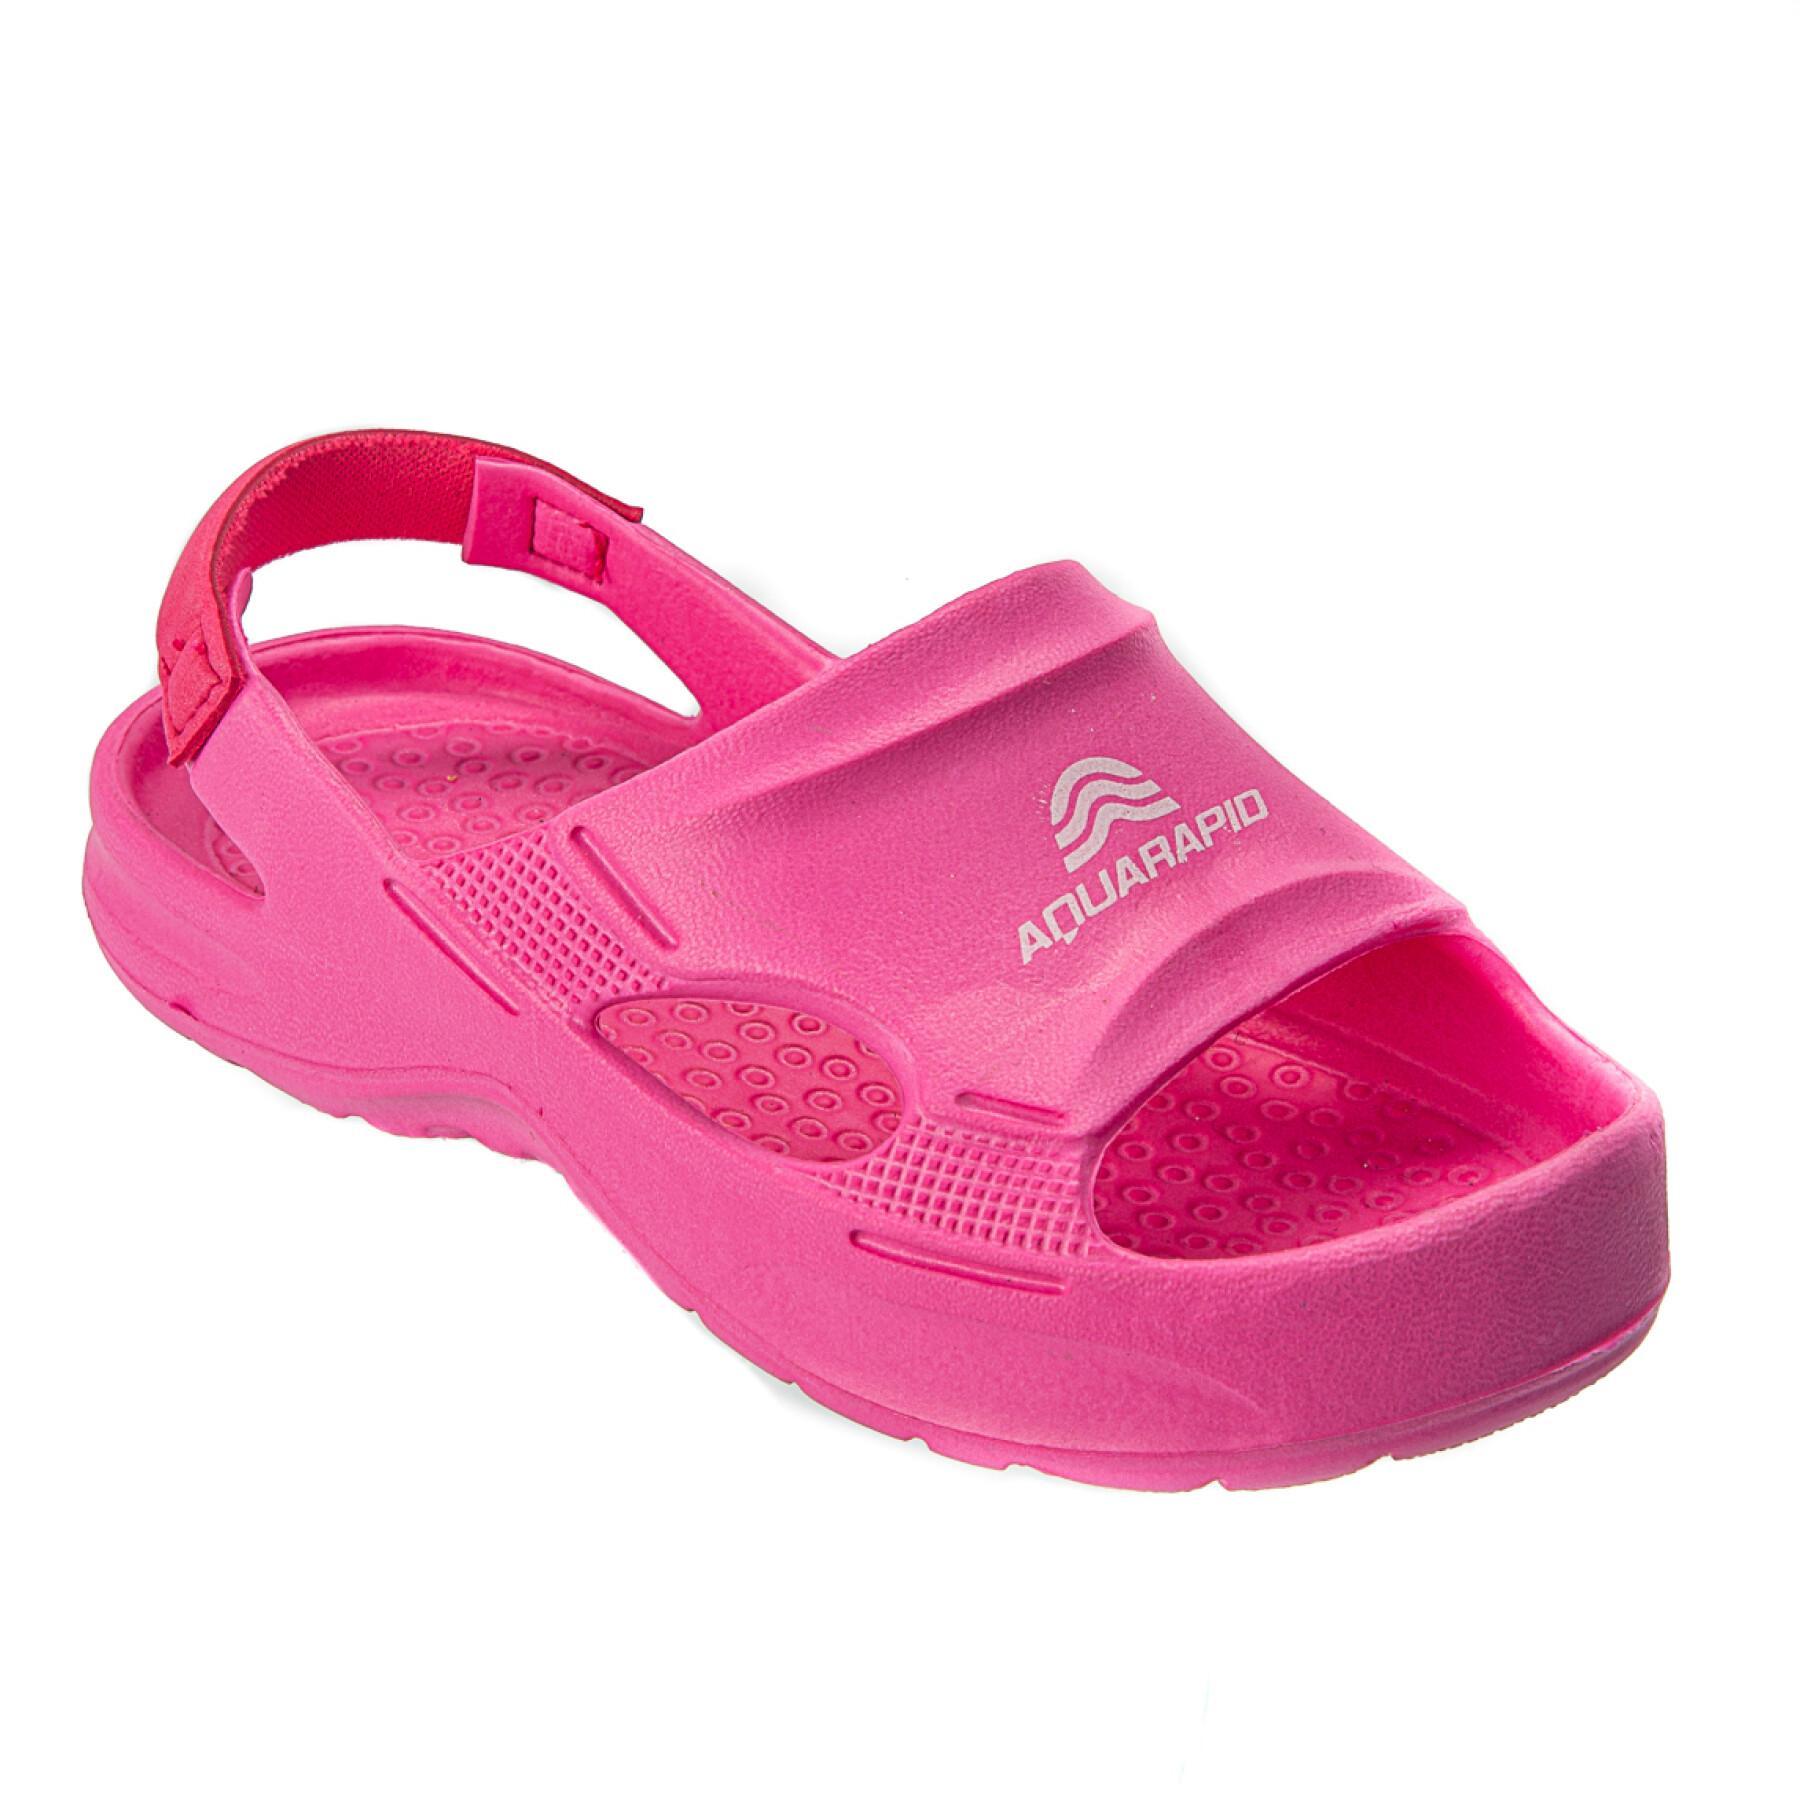 Sandálias para raparigas Aquarapid Giba